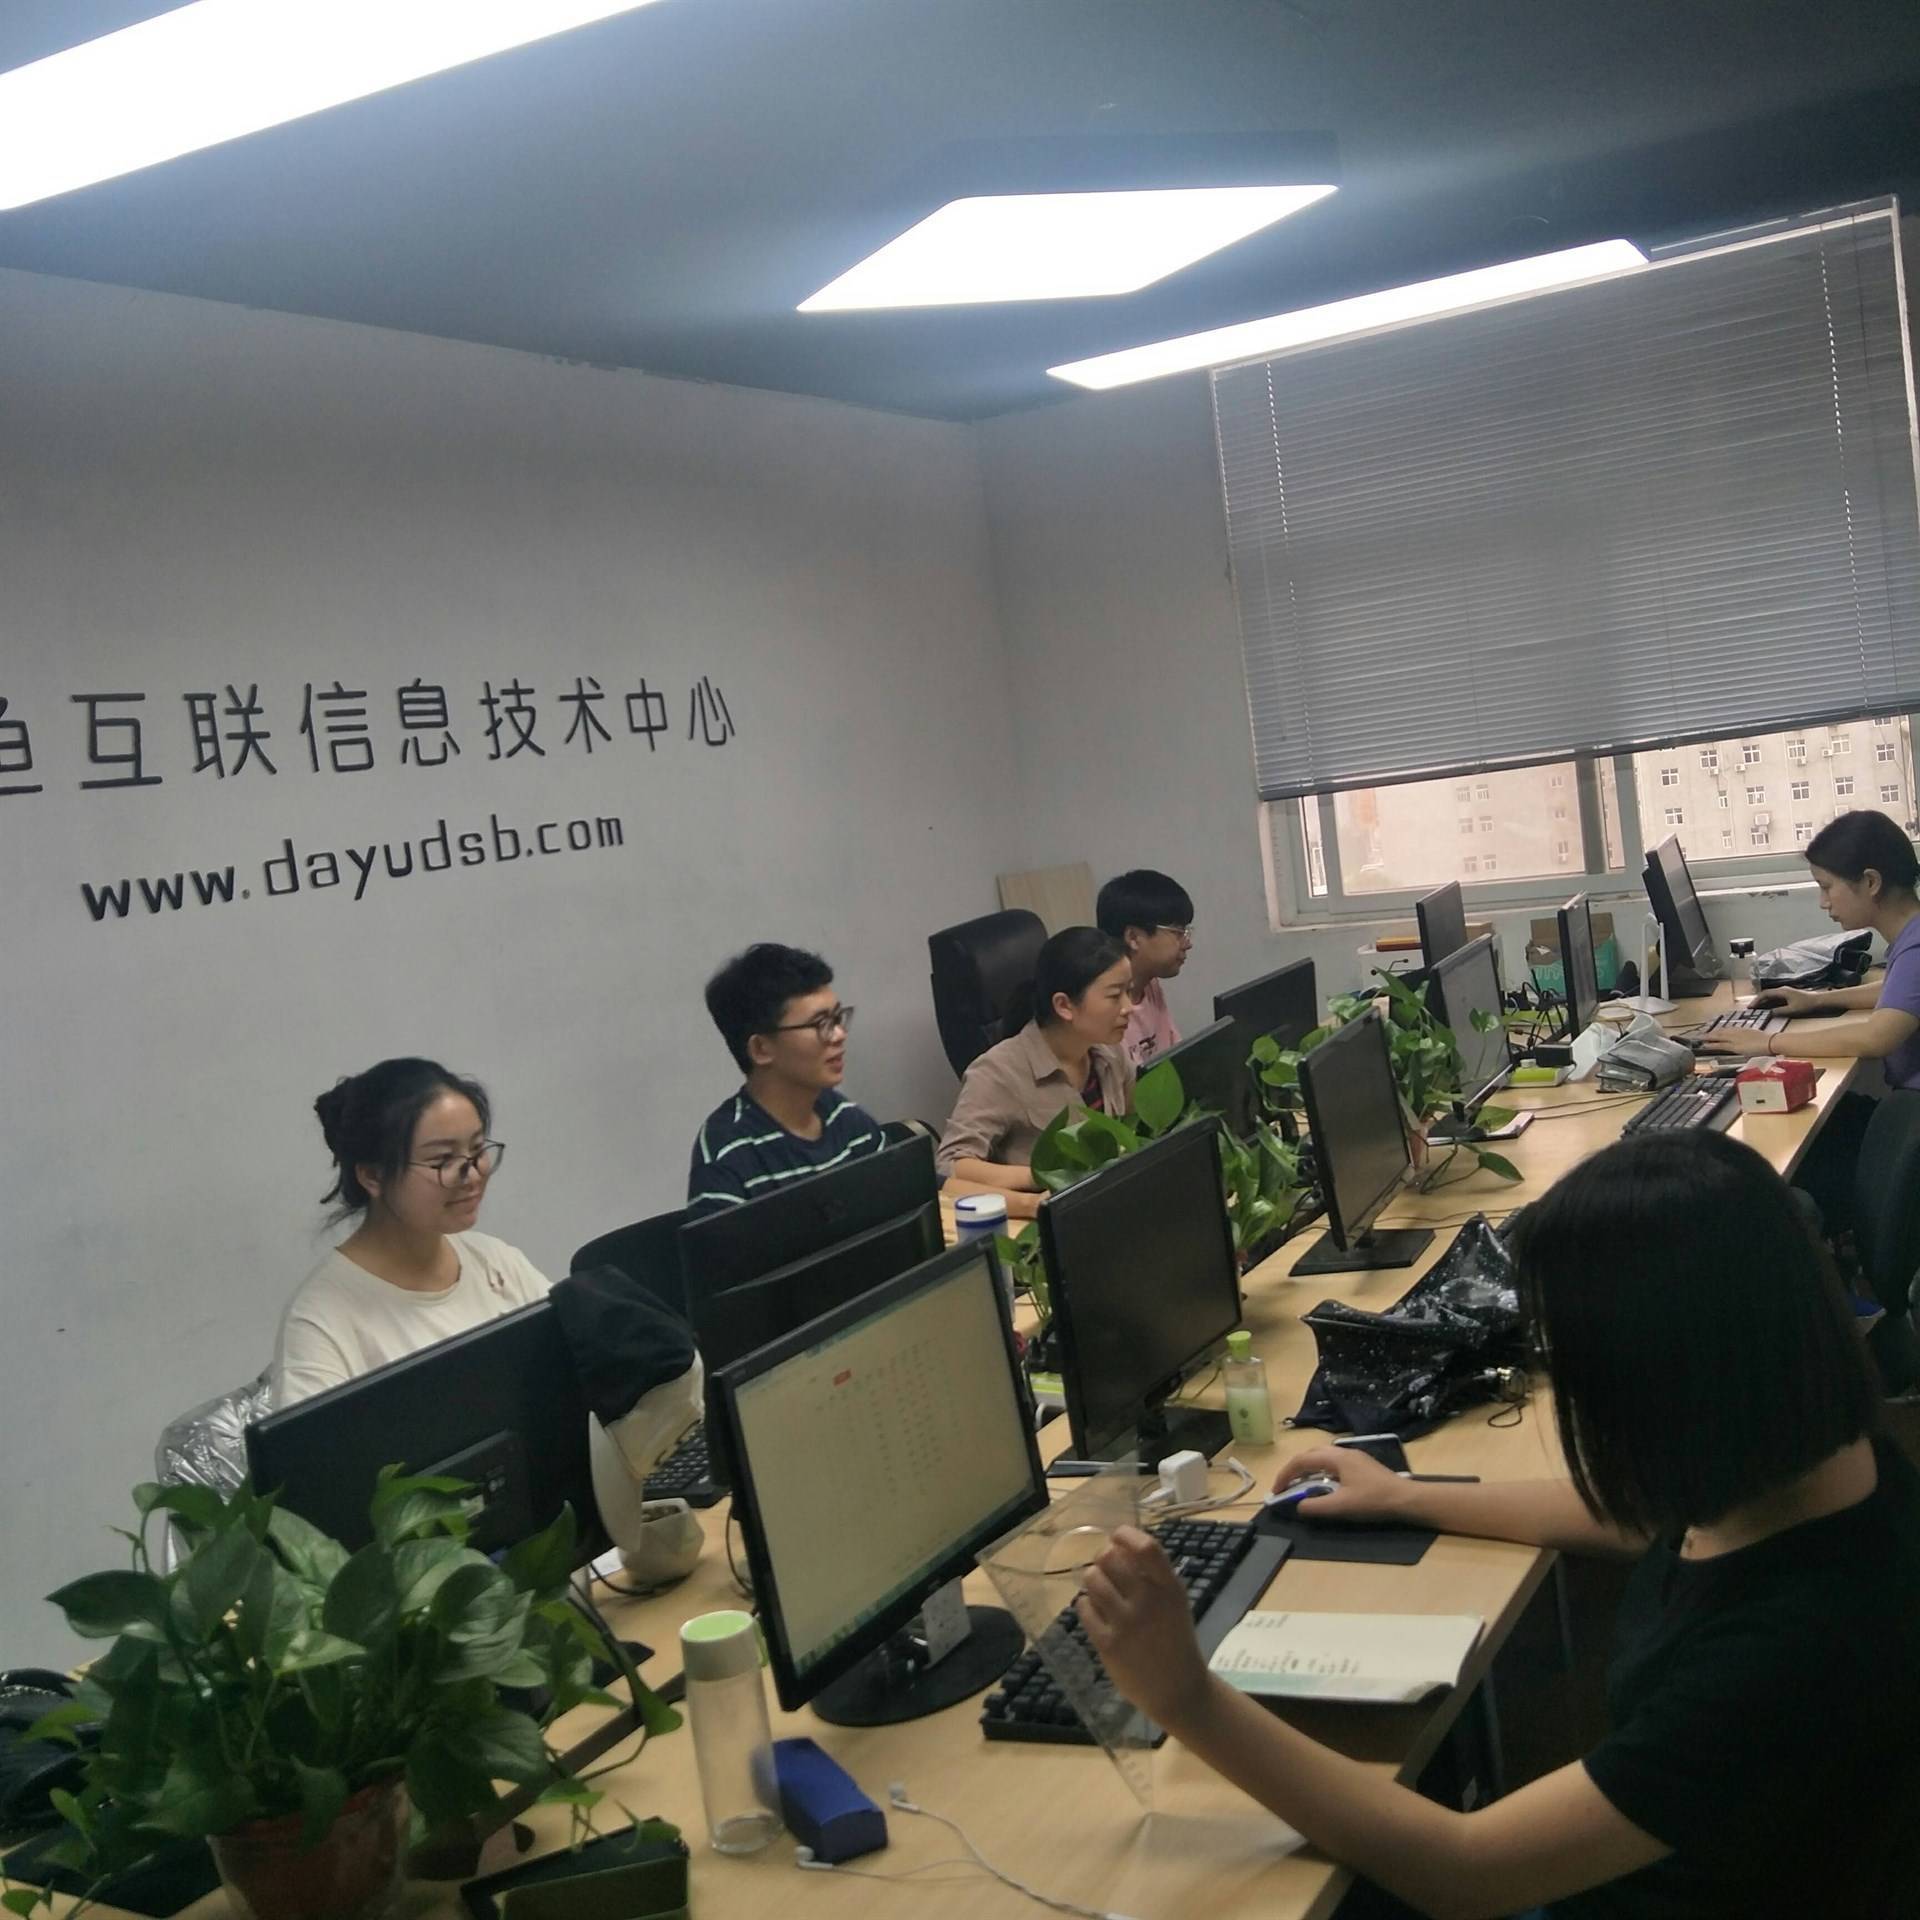 郑州北鱼互联网信息技术有限公司